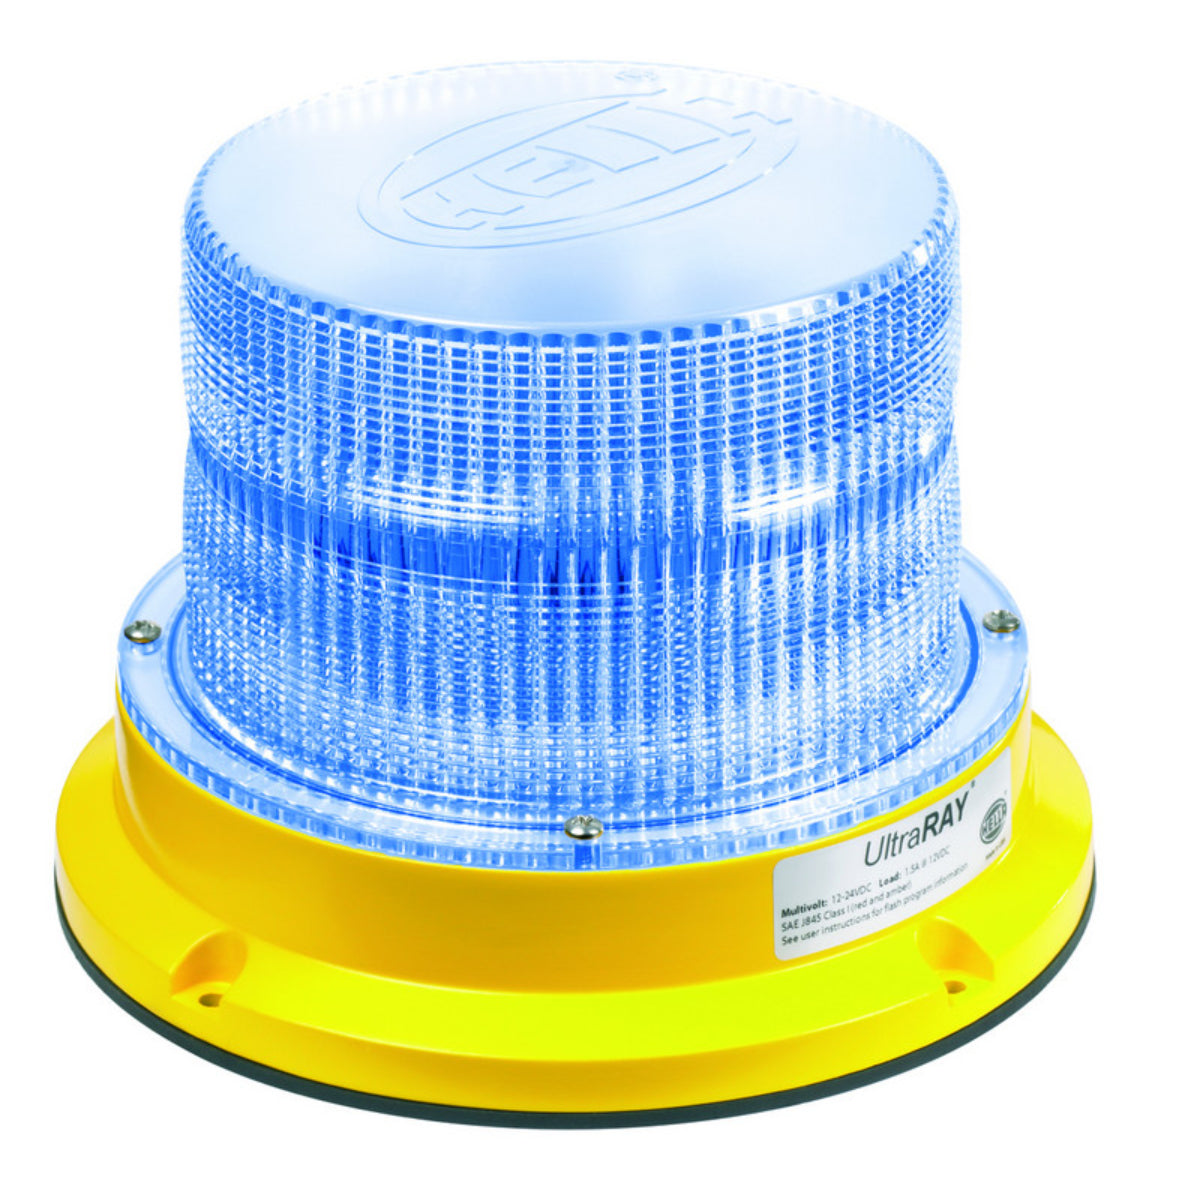 Hella - Ultraray Led Rotatng Beacon 10-30V 2 Tier Blue Led Yellow